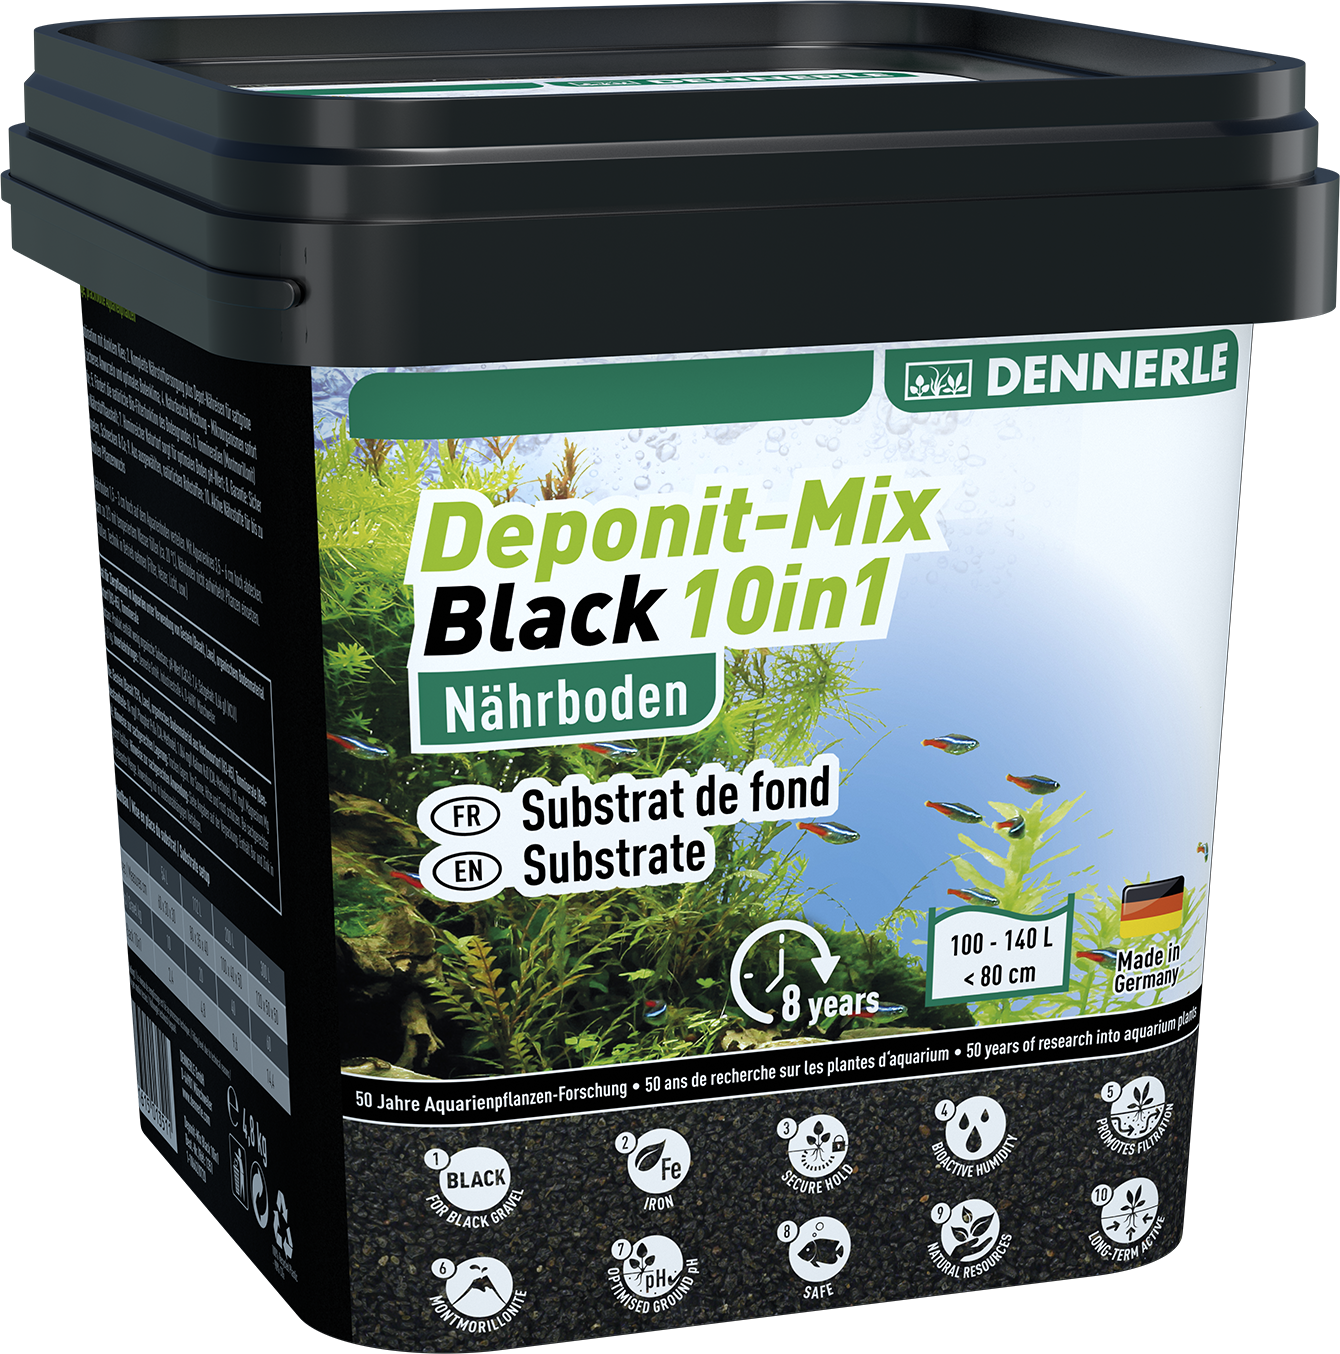 דיפונט מיקס שחור 10ב1 – 4.8 ק"ג דנרלי Deponit-Mix Black 10in1 – 4.8kg DENNERLE